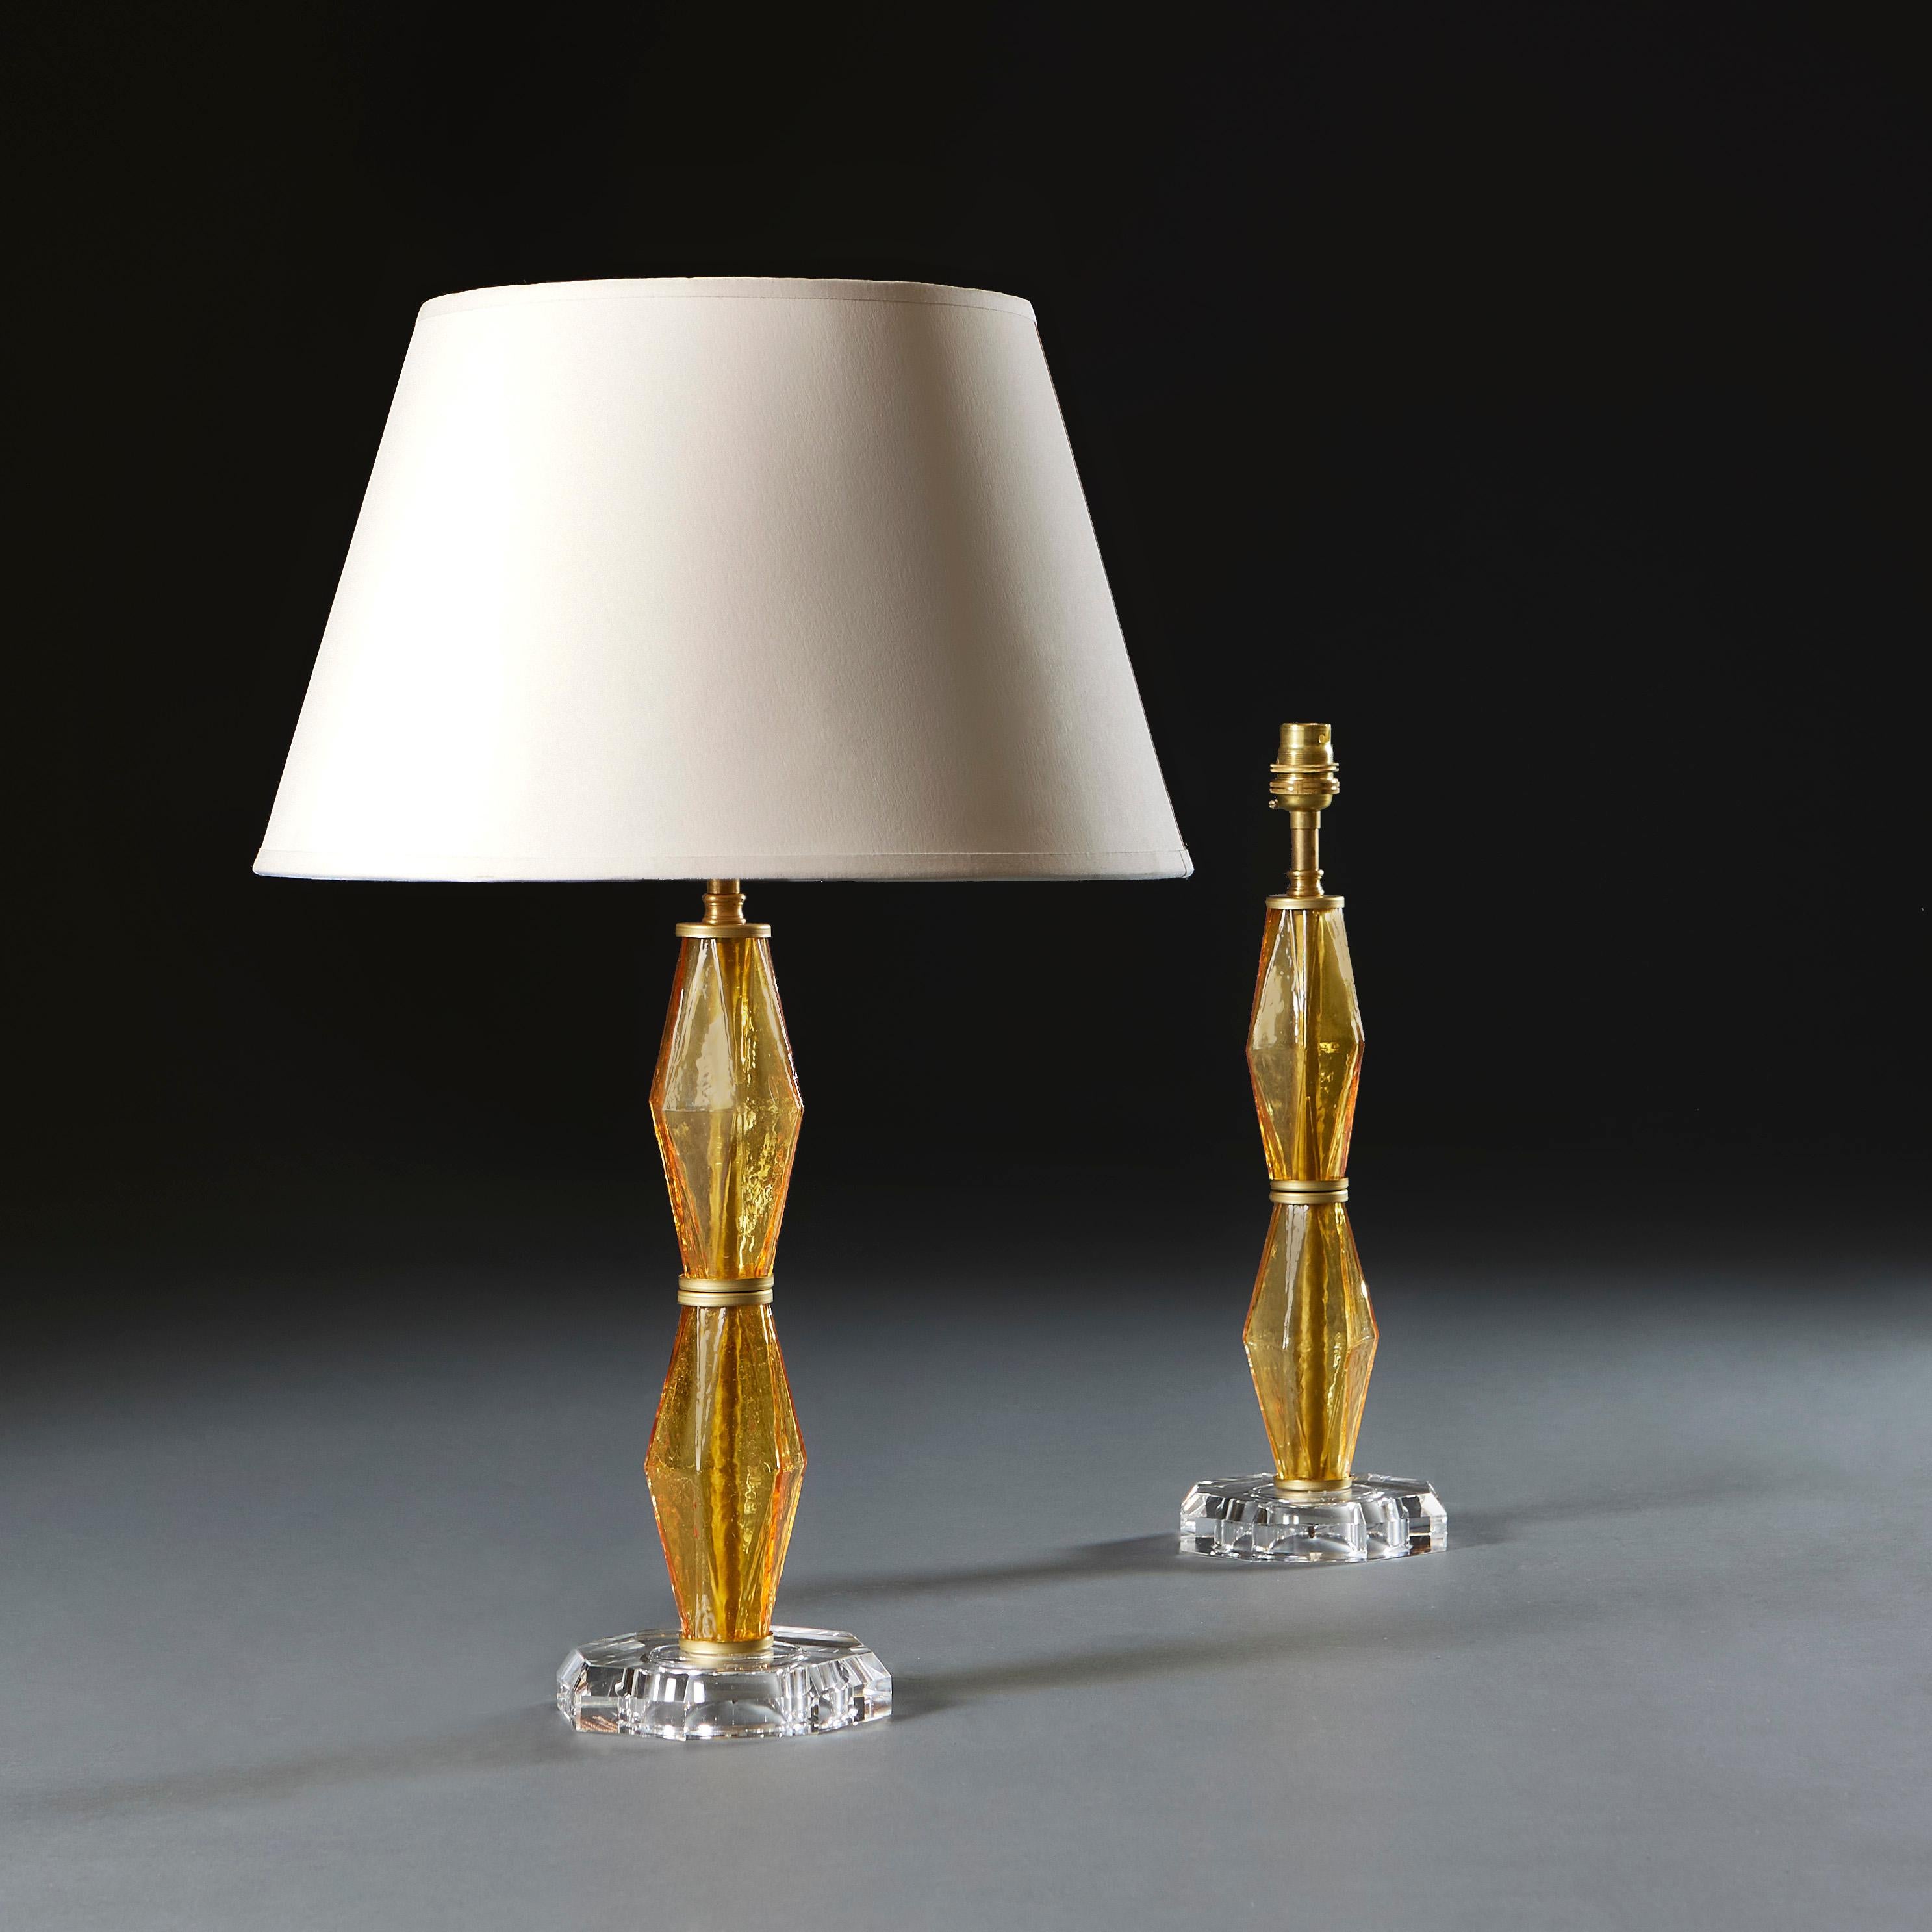 Italie, vers 1940

Paire de lampes inhabituelles en verre ambré avec une formation en diamant sur la tige, soutenues par une base octogonale en verre clair. D'après Carlo Scarpa.

Hauteur 31.00cm
Hauteur avec abat-jour 56.00cm
Diamètre de la base